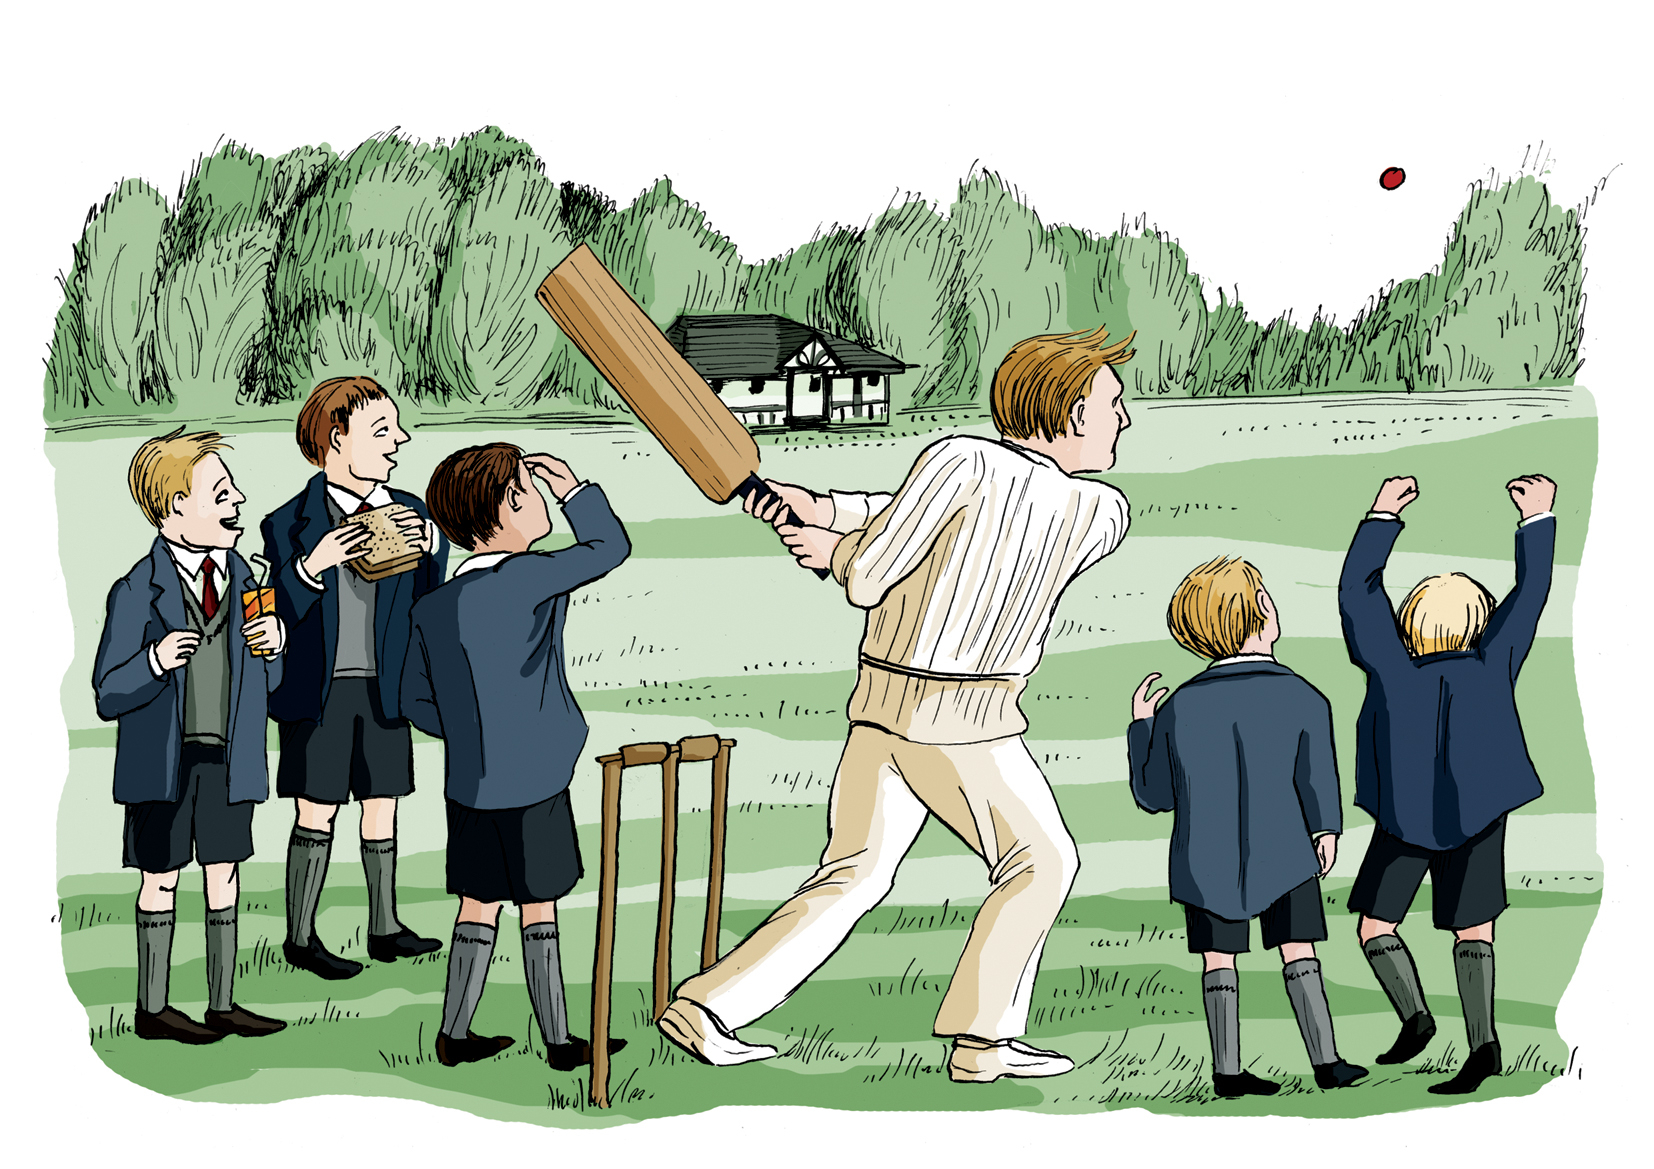 Gappies Cricket